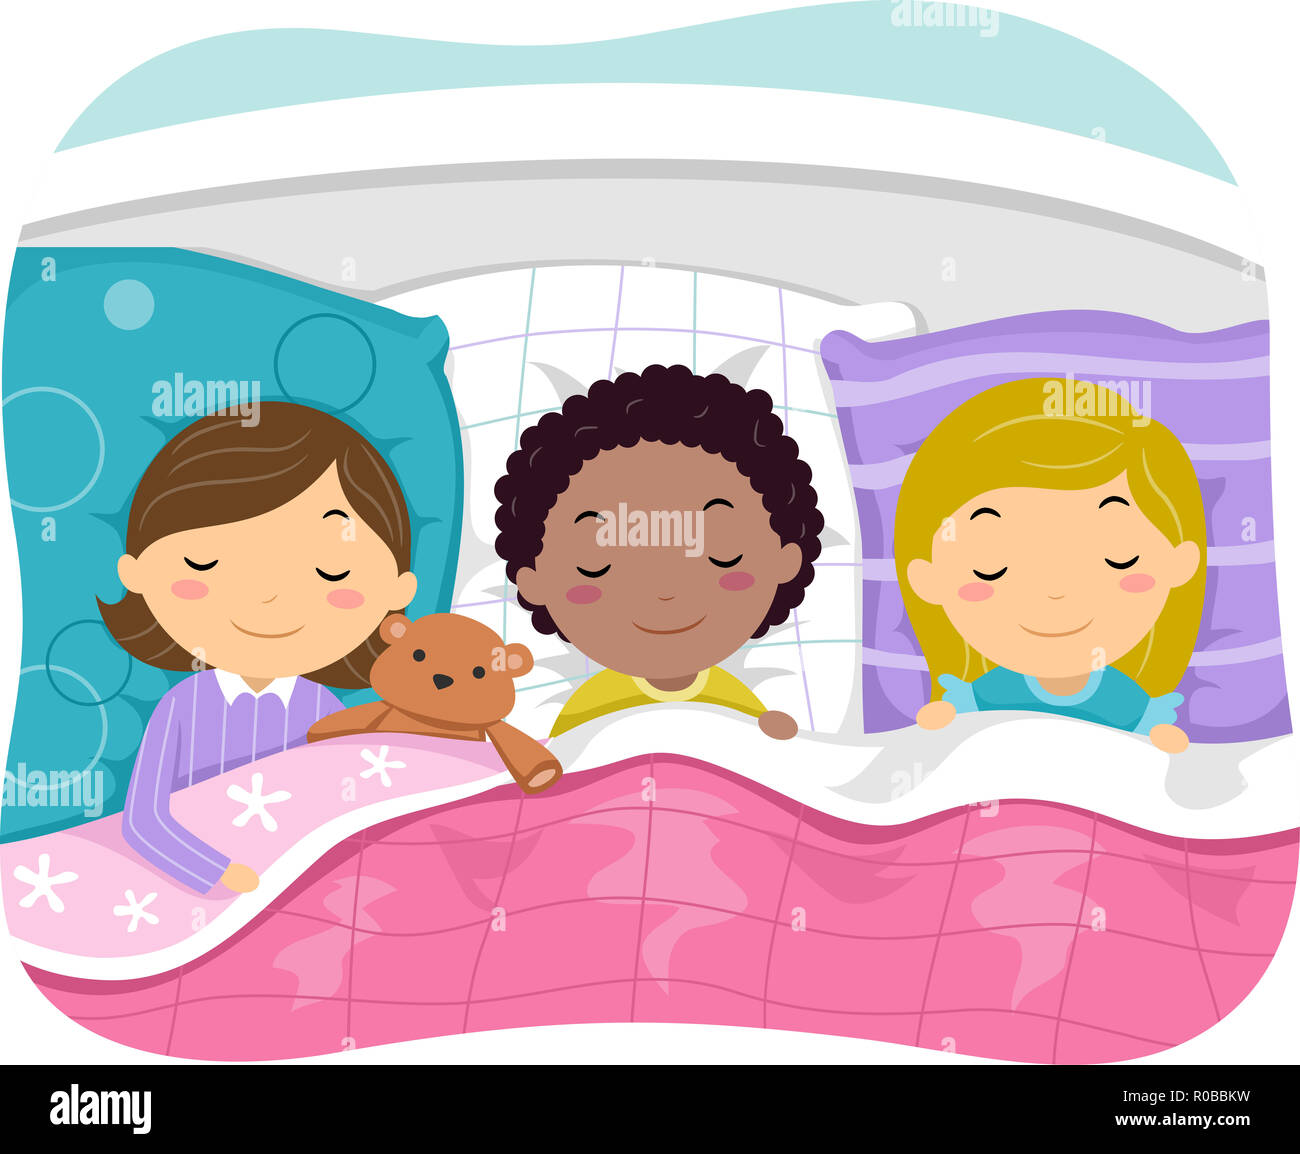 Illustration de l'enfant filles amis dormir dans le même lit Banque D'Images